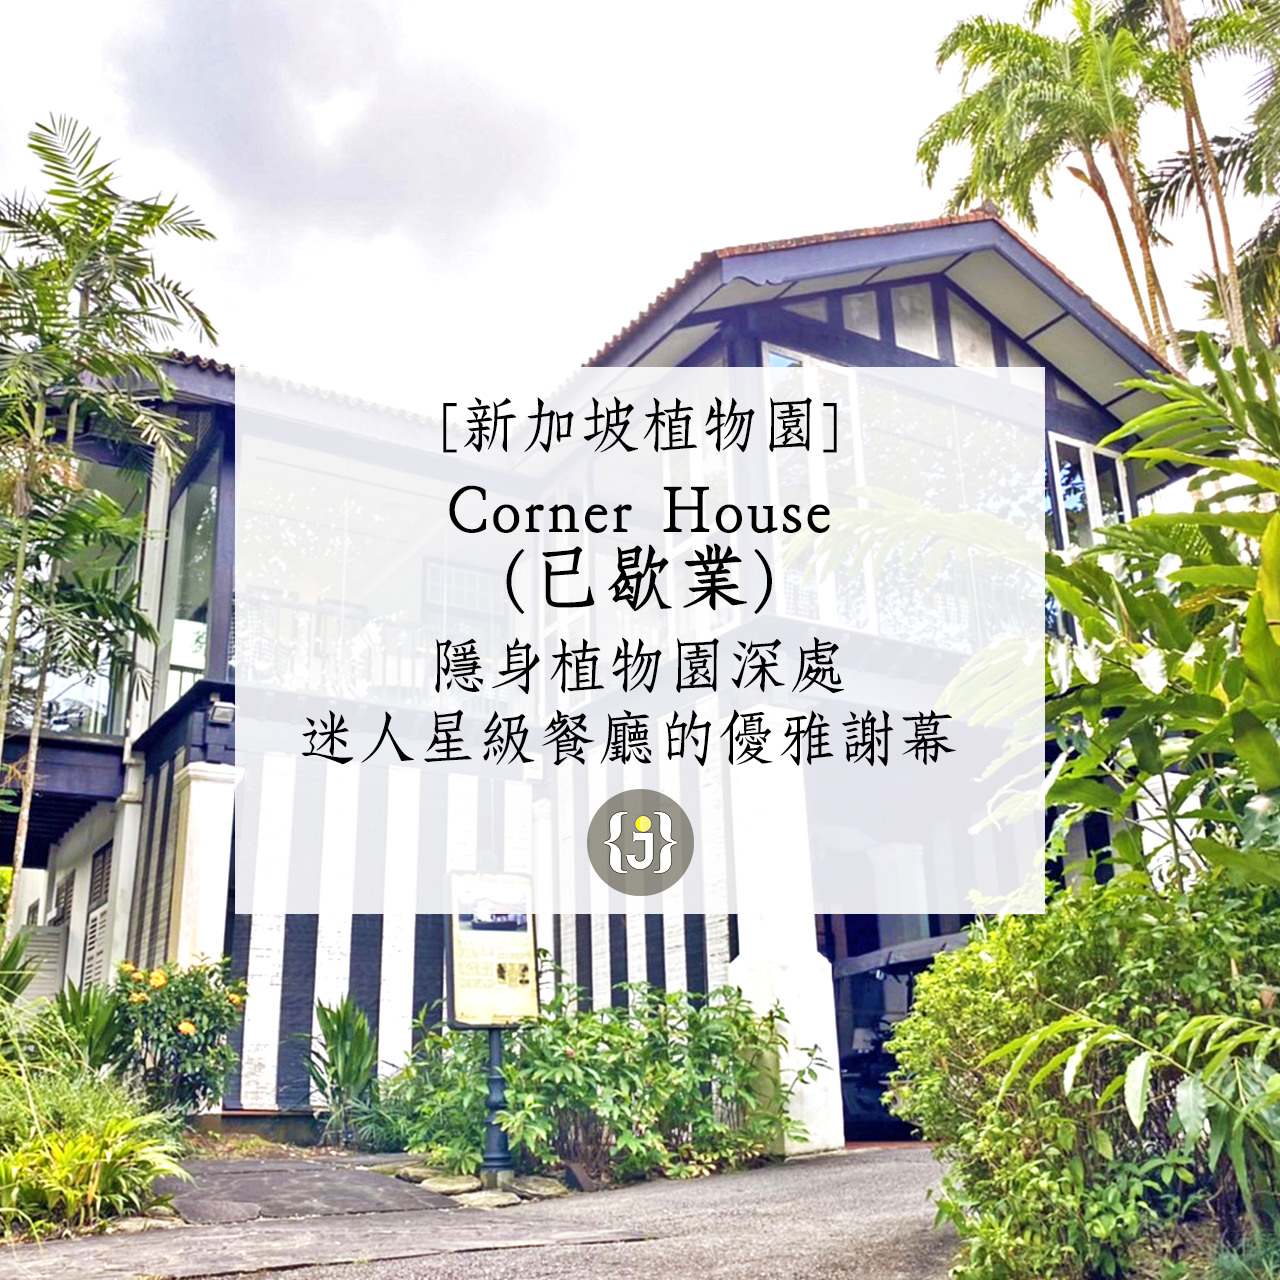 【新加坡植物園】Corner House已歇業隱身植物園深處 迷人星級餐廳的優雅謝幕